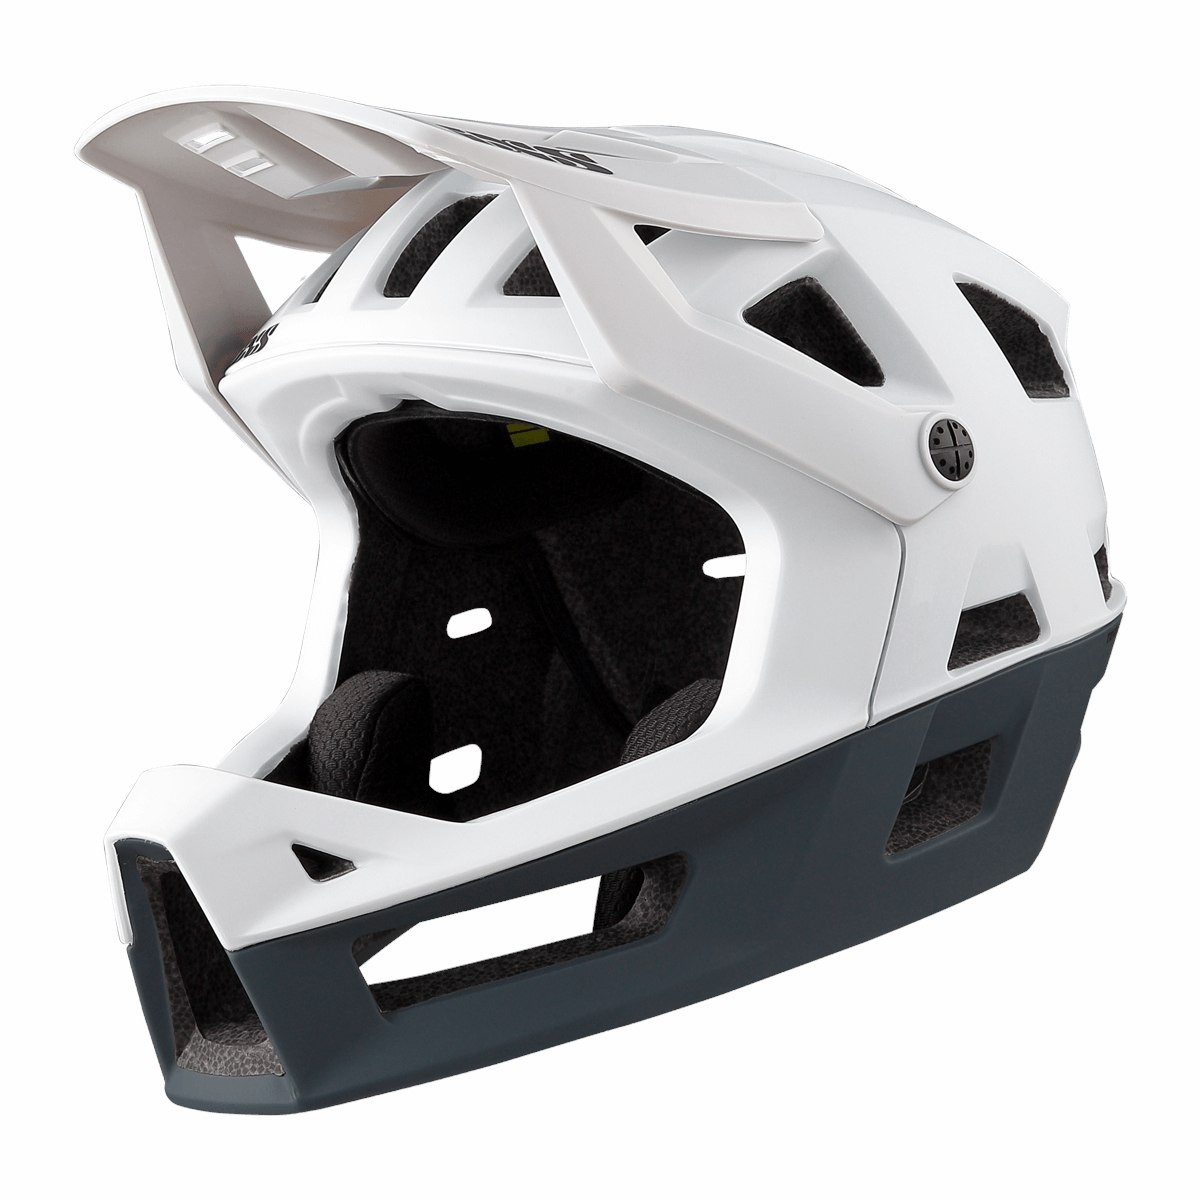 Produktbild von iXS Trigger Fullface Helm - weiß